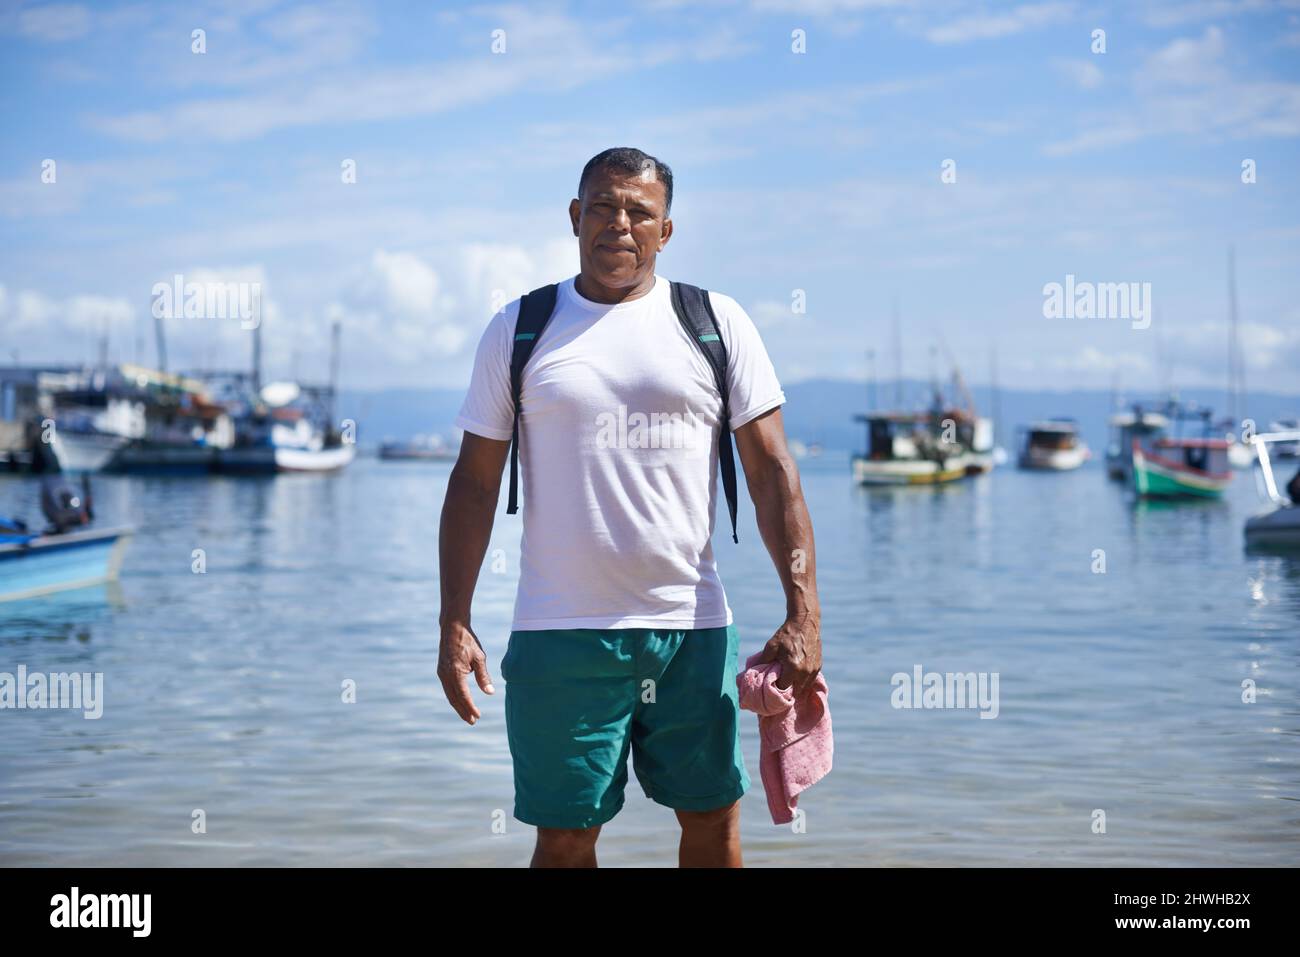 La pesca è la mia vita. Ritratto di un pescatore in piedi in acque poco profonde nel porto. Foto Stock